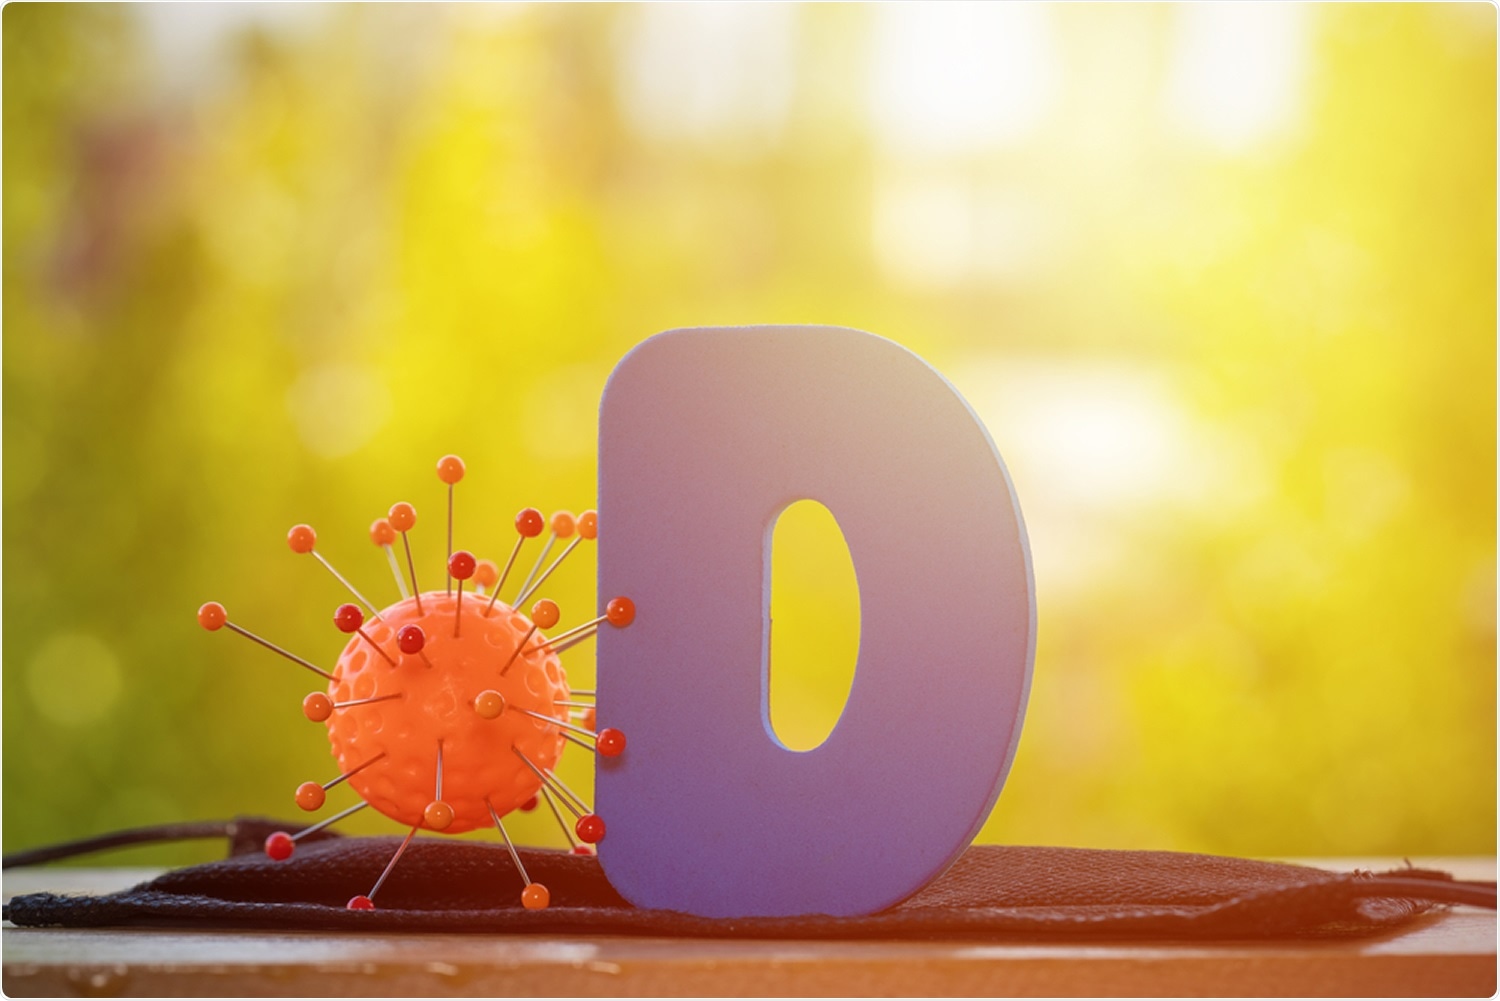 A D vitamin hiánya fokozza a Covid-19 fertőzés és halálozás kockázatát